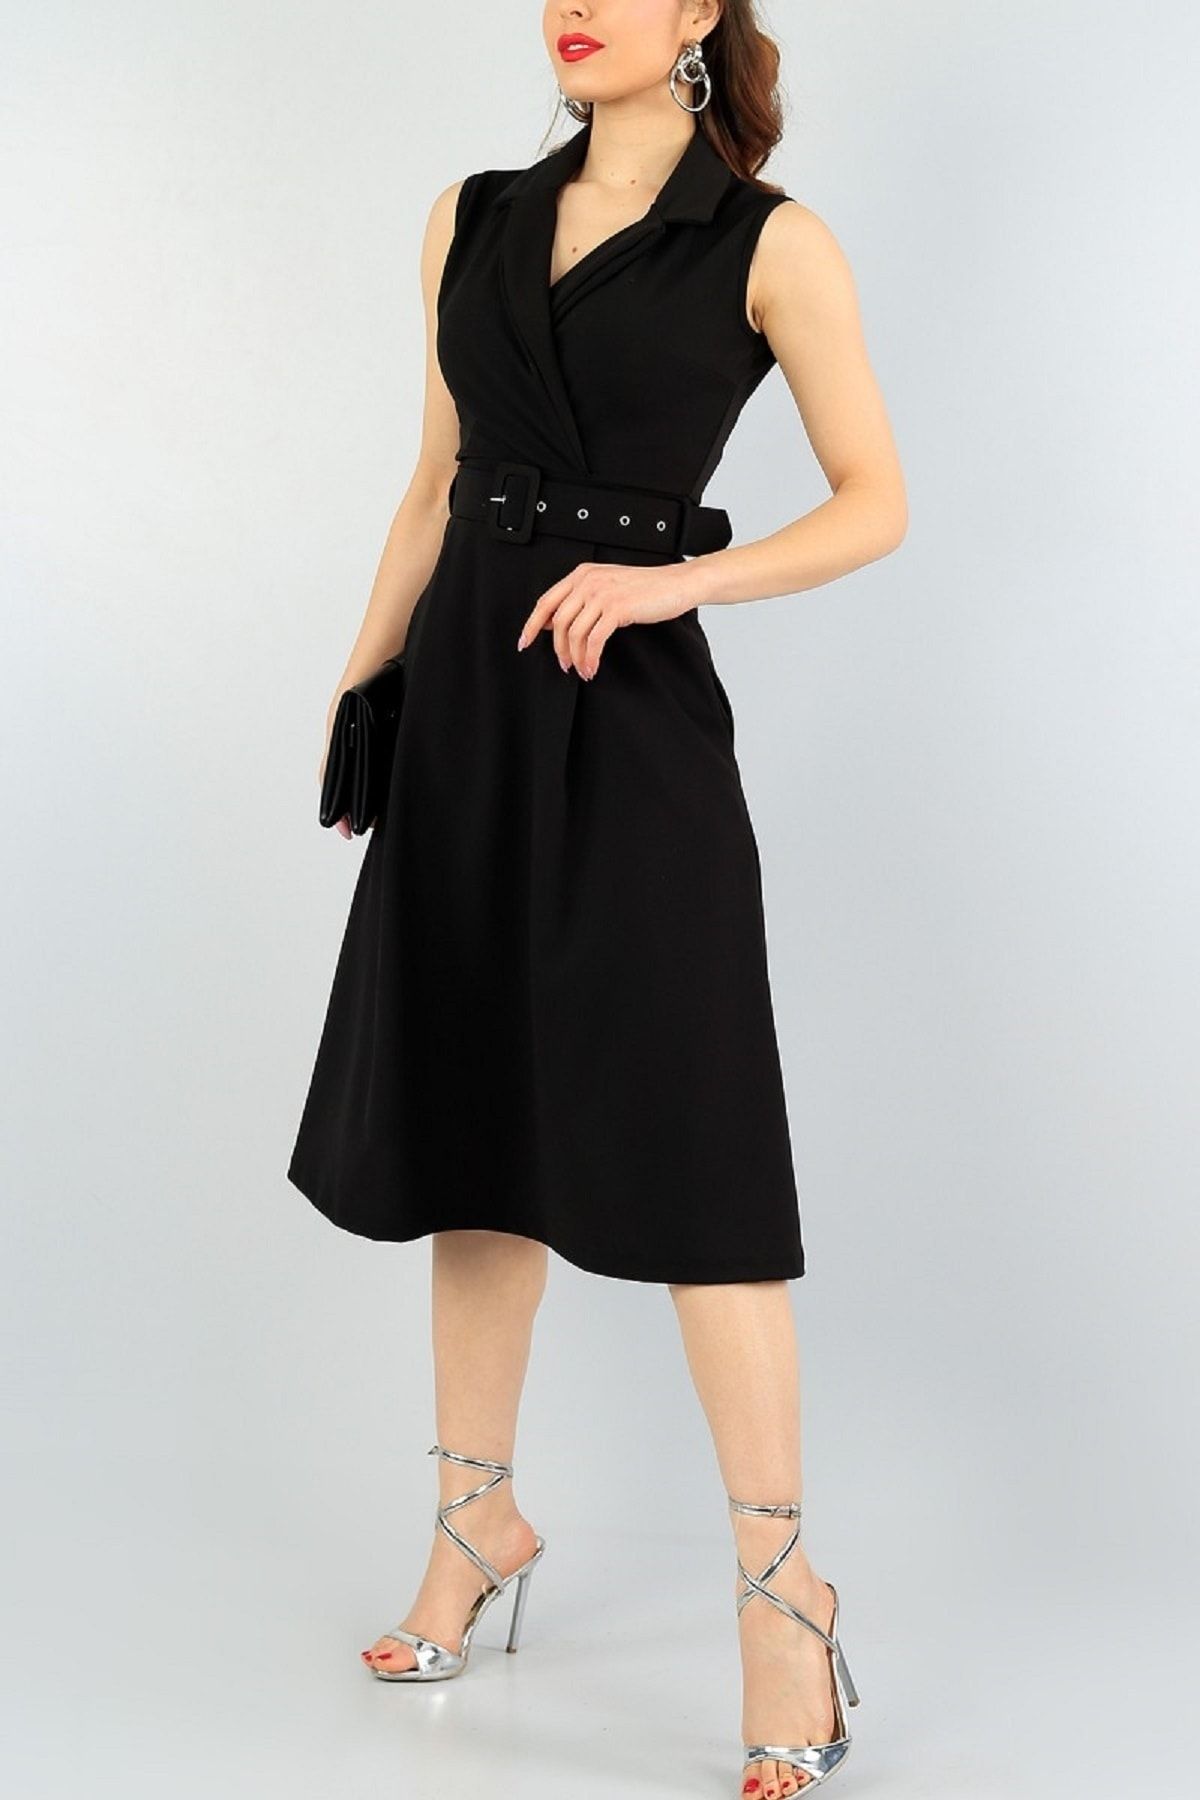 lovebox Esnek Kumaş Kruvaze Yaka Kemer Detaylı Pileli Dizaltı Siyah Abiye Elbise 59434